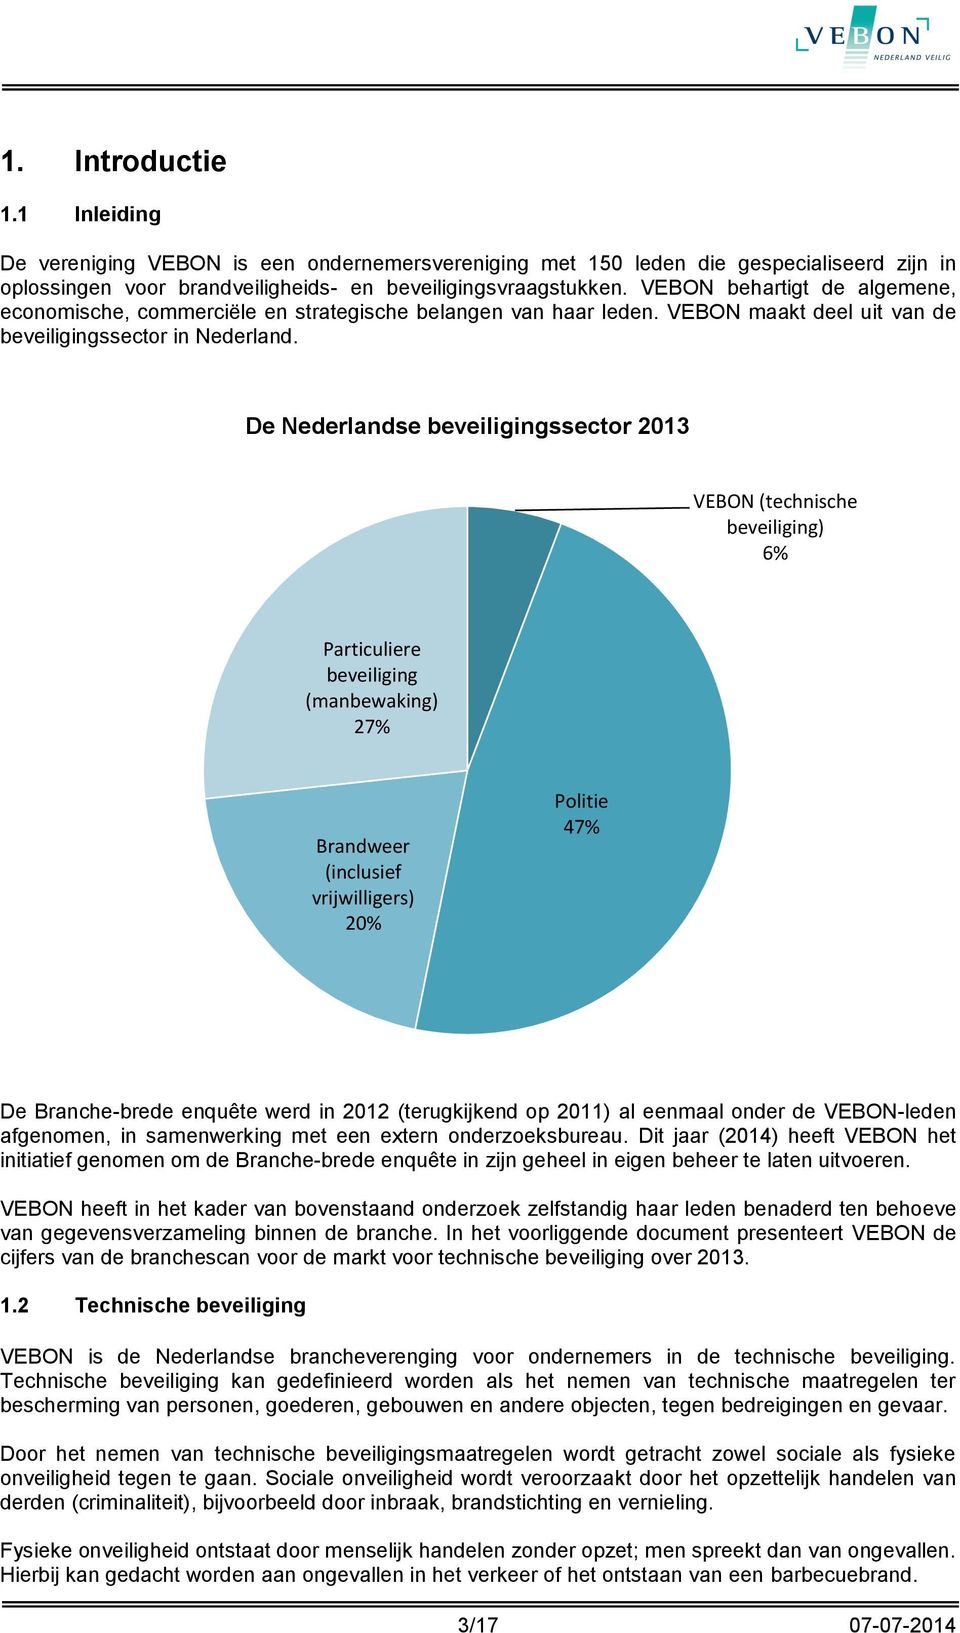 De Nederlandse beveiligingssector 2013 VEBON (technische beveiliging) 6% Particuliere beveiliging (manbewaking) 27% Brandweer (inclusief vrijwilligers) 20% Politie 47% De Branche-brede enquête werd